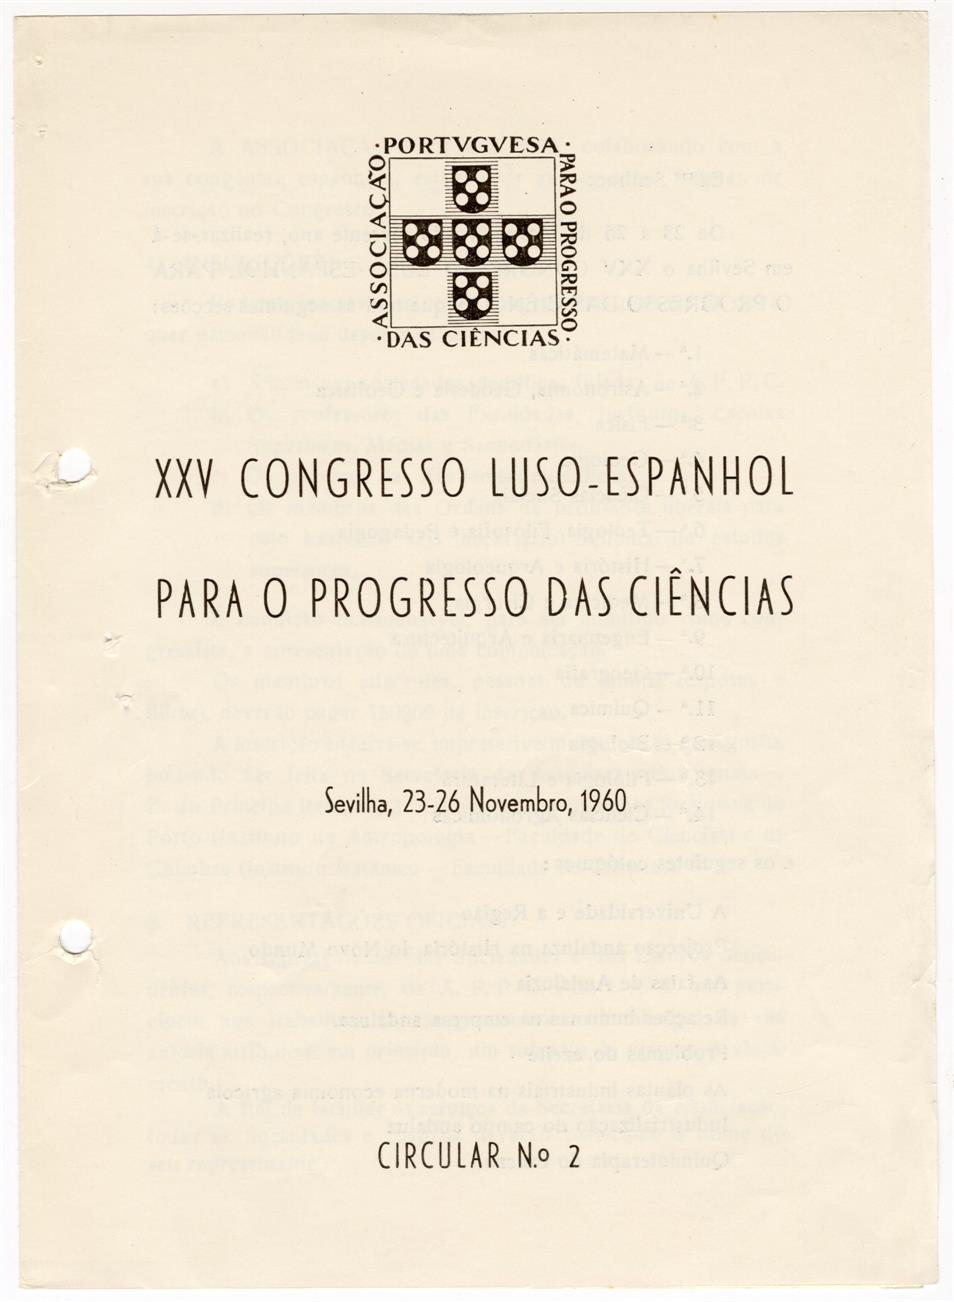 XXV Congresso Luso-Espanhol para o Progresso das Ciências : circular n.º 2